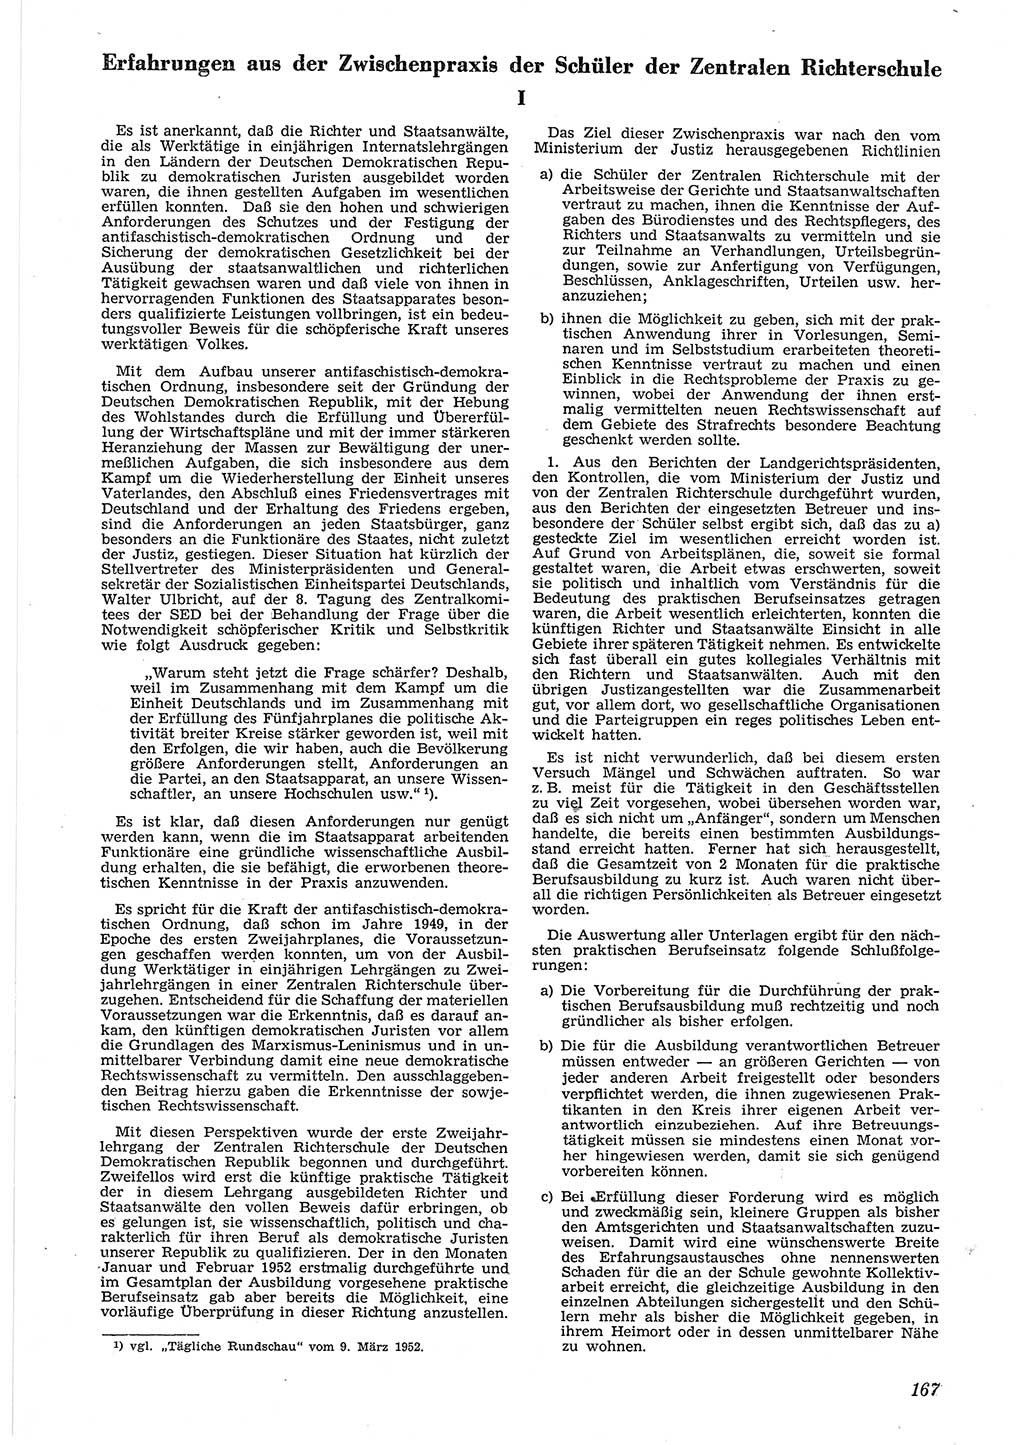 Neue Justiz (NJ), Zeitschrift für Recht und Rechtswissenschaft [Deutsche Demokratische Republik (DDR)], 6. Jahrgang 1952, Seite 167 (NJ DDR 1952, S. 167)